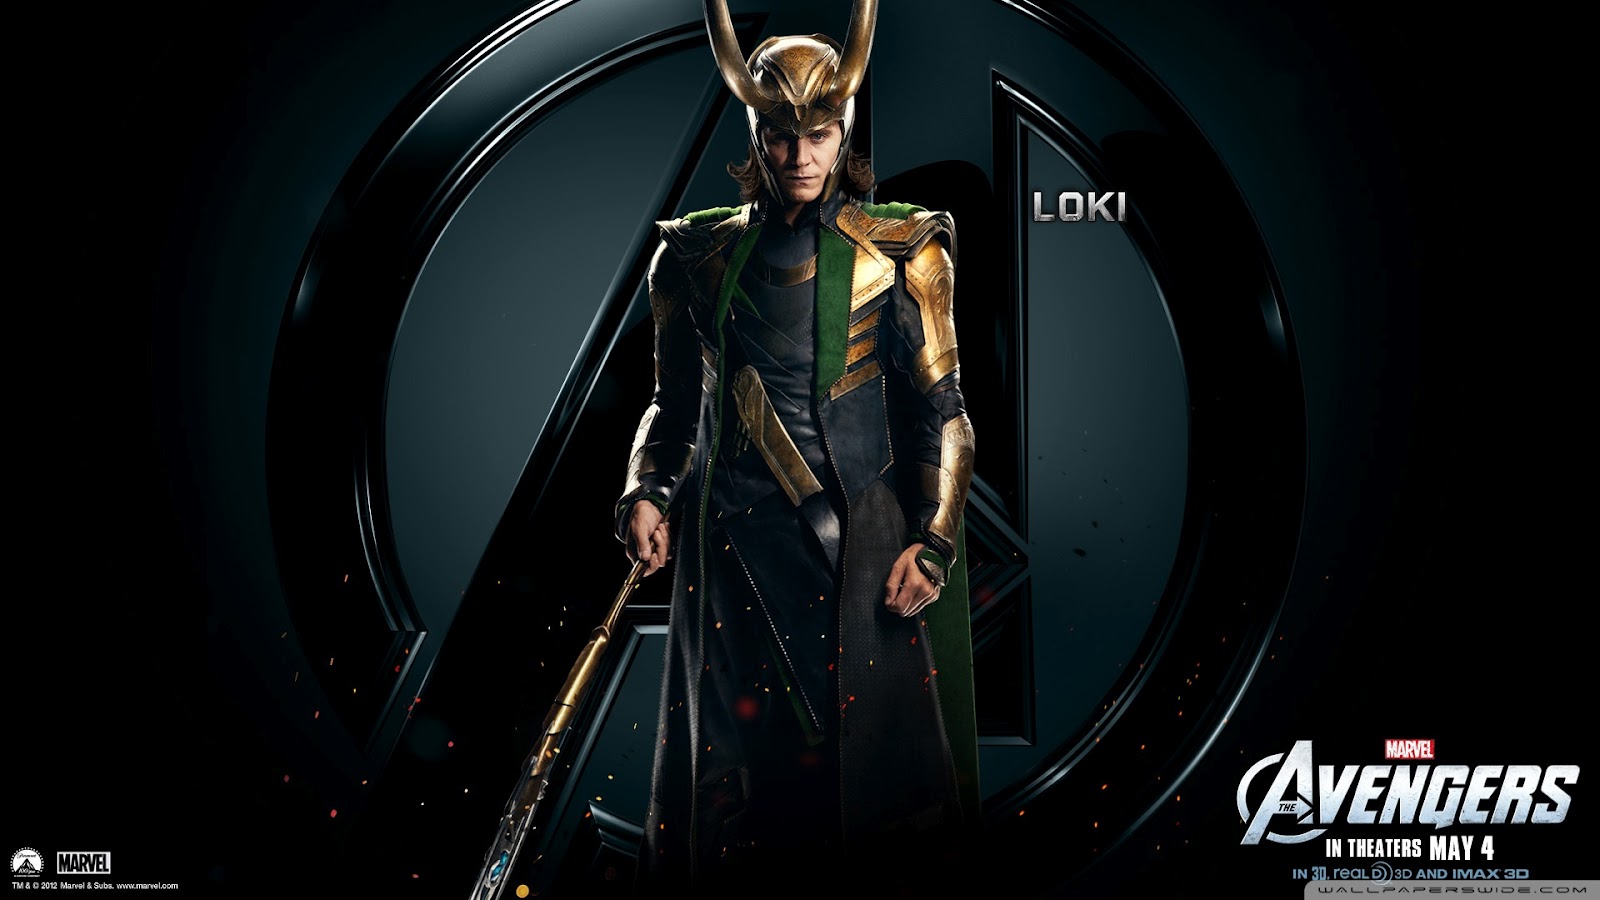 Marvel's the Avengers Movie 2012 (Marvel Avengers Assemble in the UK) is Tom Hiddleston as Loki Character the Avengers Movie 2012 are Tom Hiddleston as Loki Character